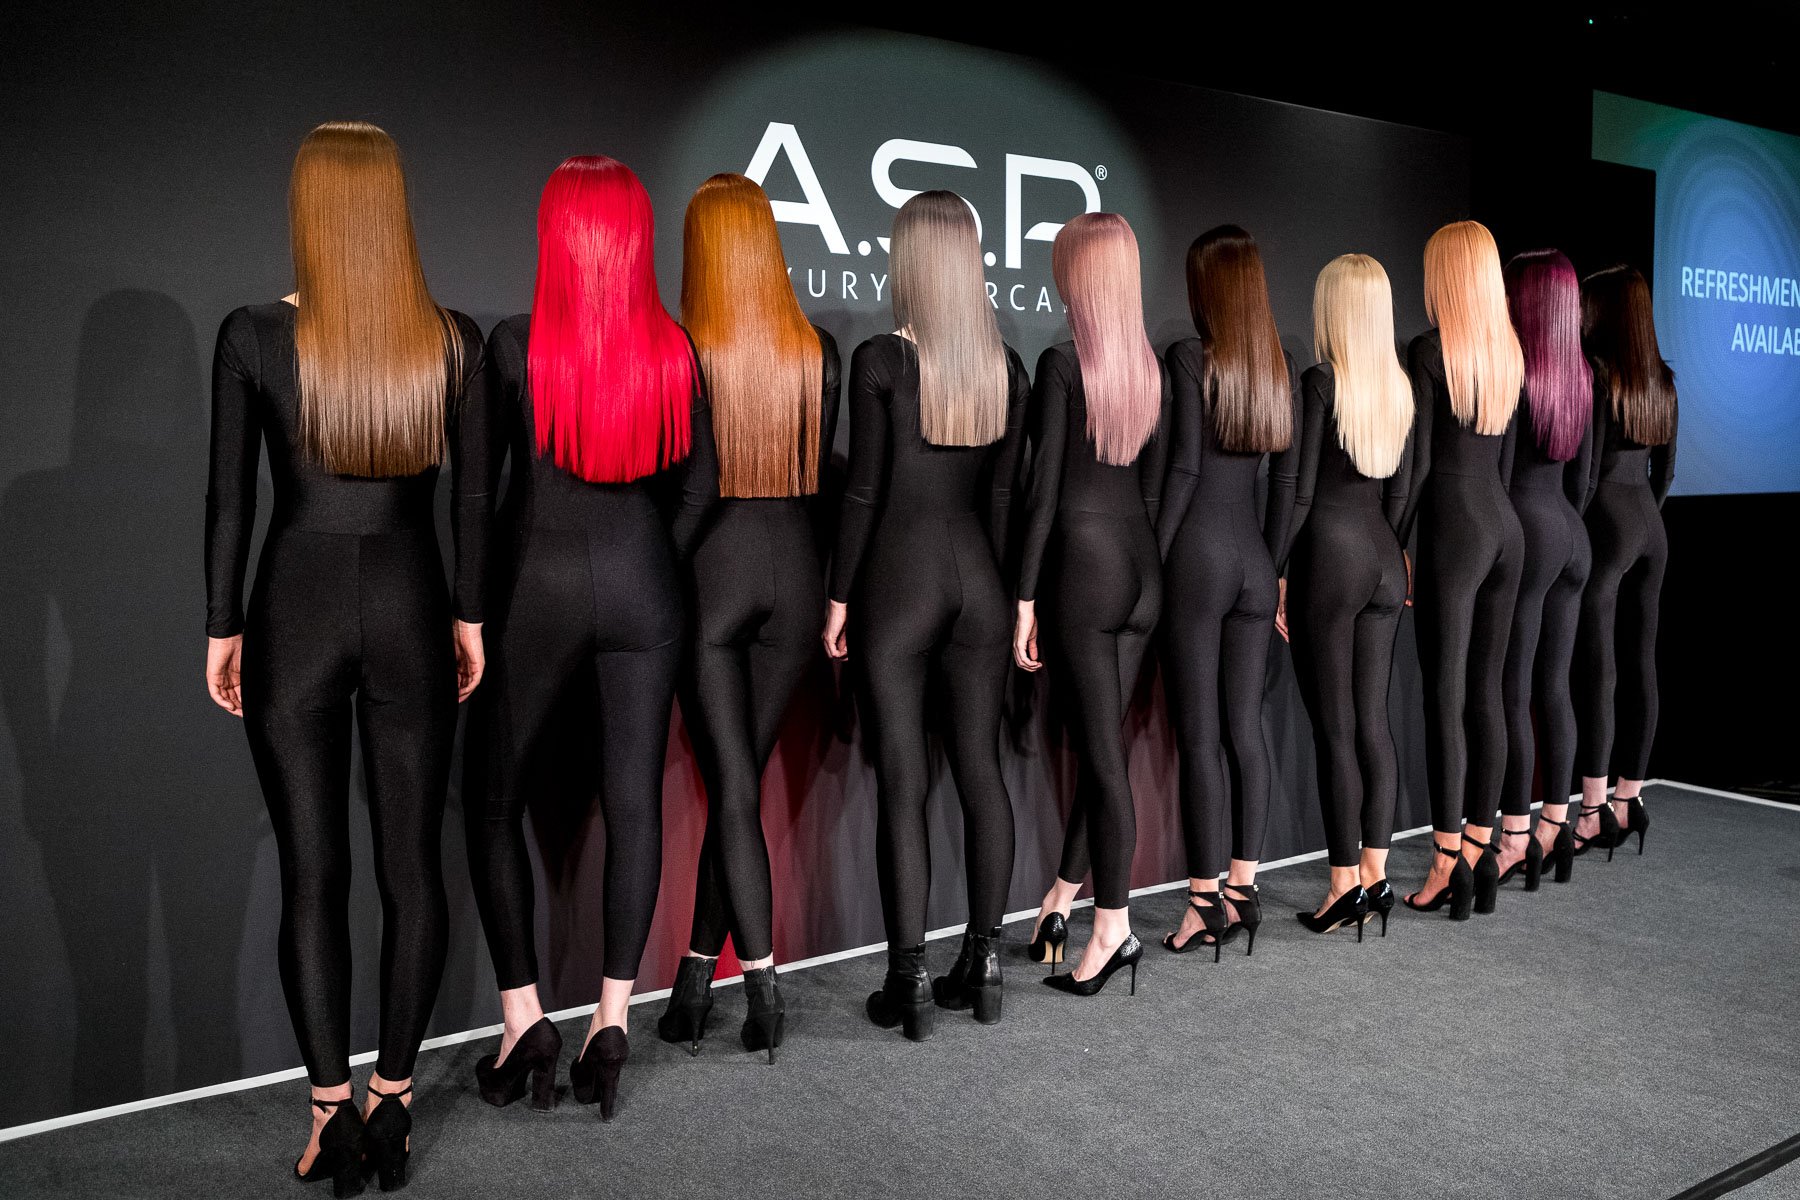 Affinage Salon Professional - Fashion Show - Assemble Content - Event Photography - 2020 - 11.jpg